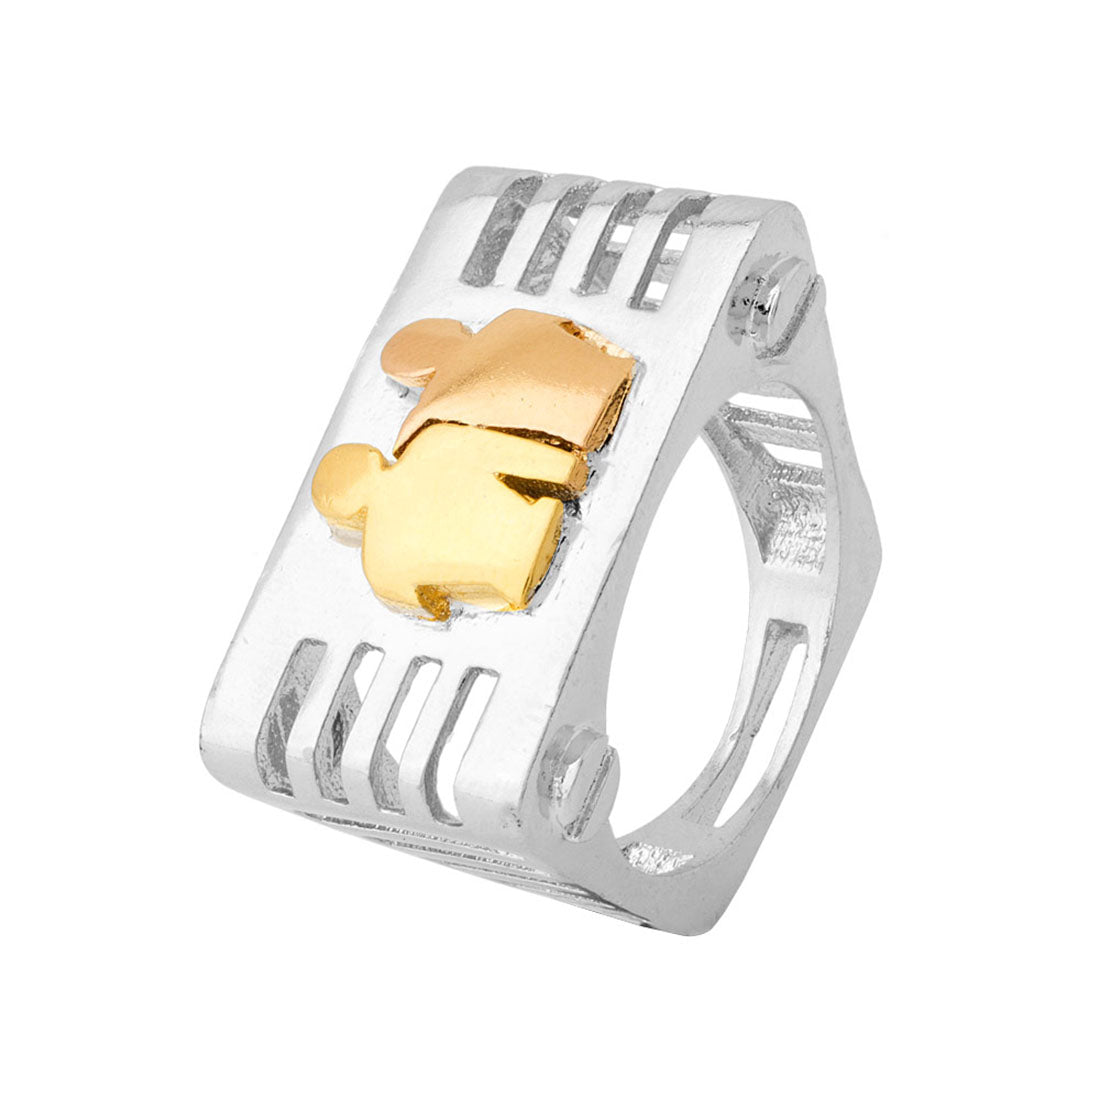 Gemini Rashi Symbol Designed Ring For Men